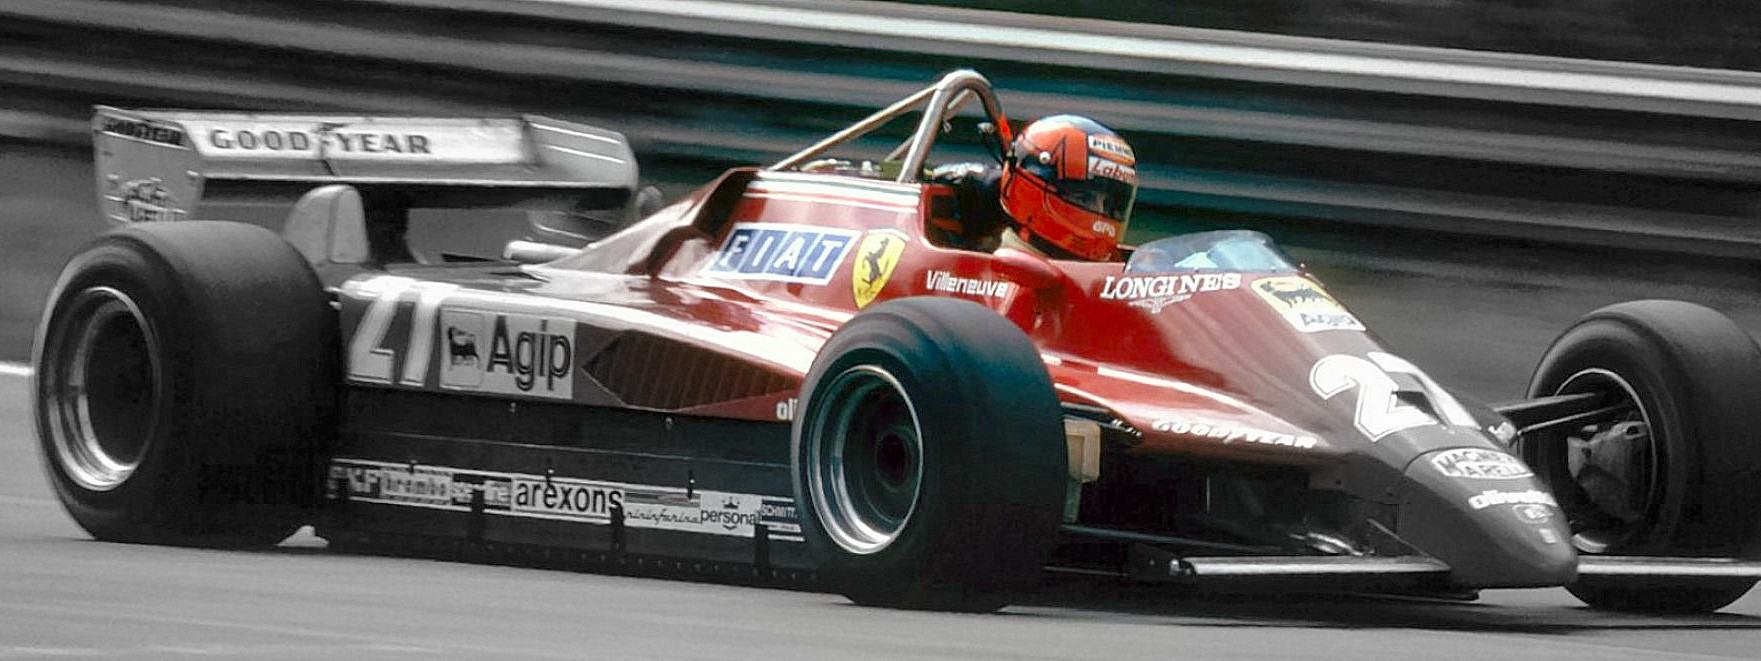 Gilles Villeneuve, pilota franco-canadese di Formula 1 e idolo del popolo della Ferrari, qui sulla sua numero 27. L'ultima tragica corsa a Zolder nel 1982 lo ha consegnato alla leggenda.